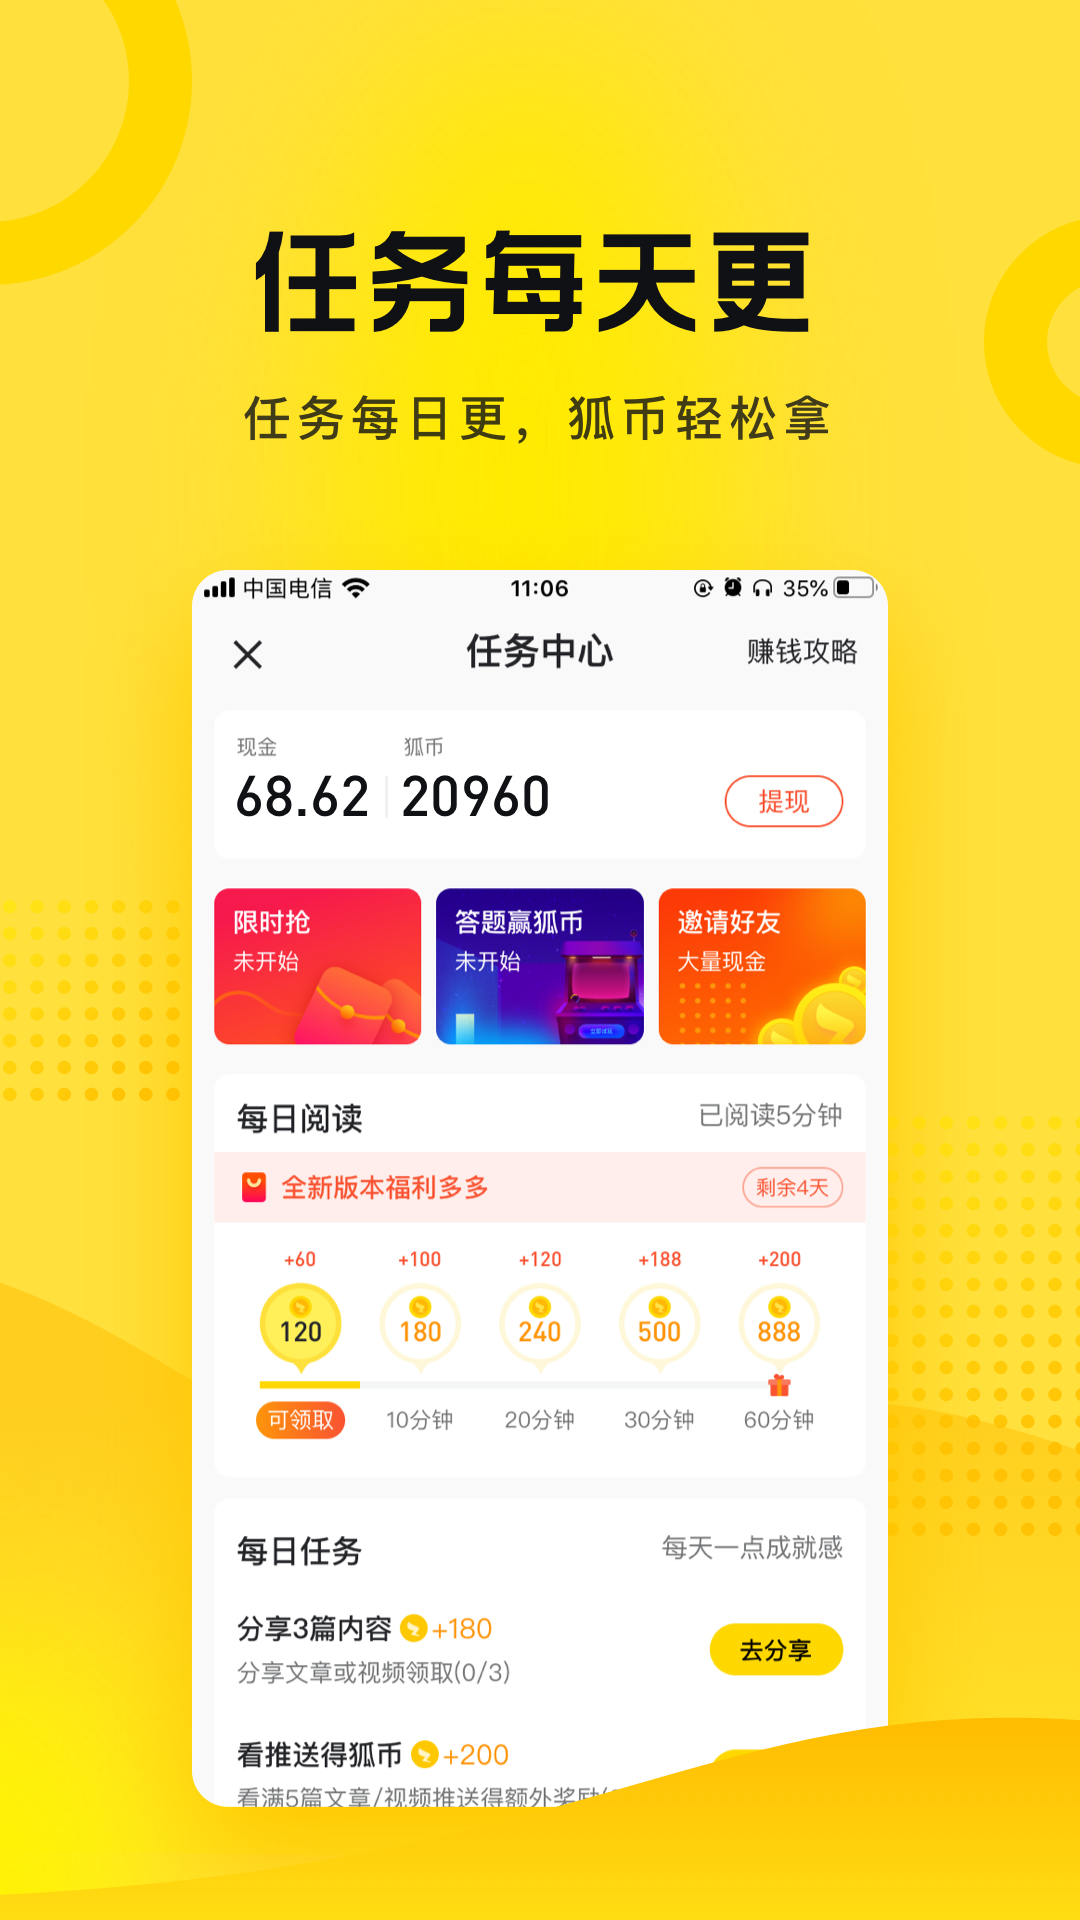 搜狐资讯app截图